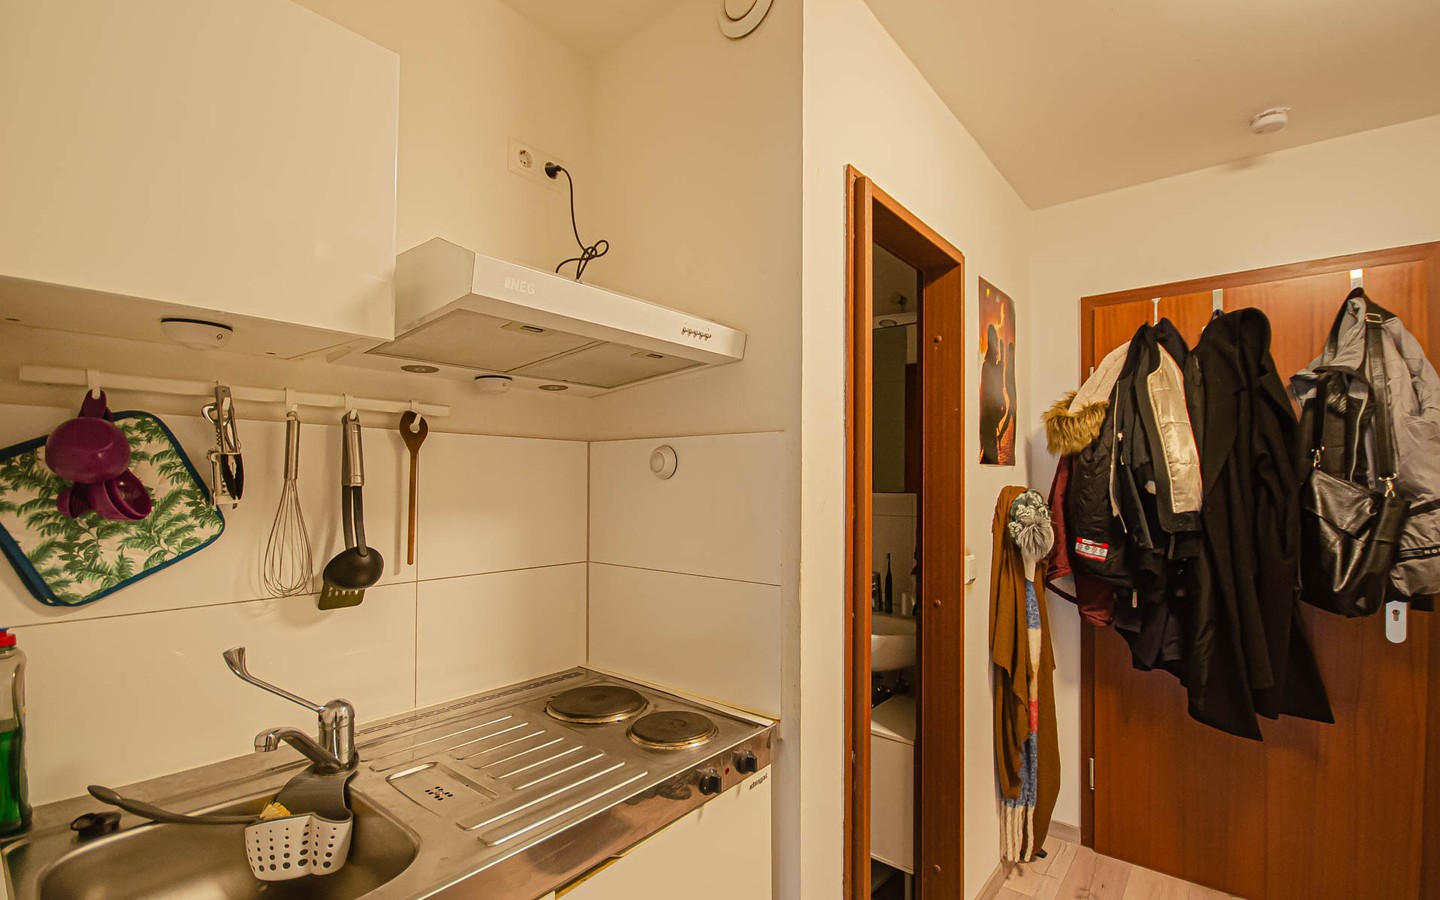 Küche - Frei werdendes Einzimmerappartement: Attraktive Kapitalanlage oder ideal zum Eigennutz.